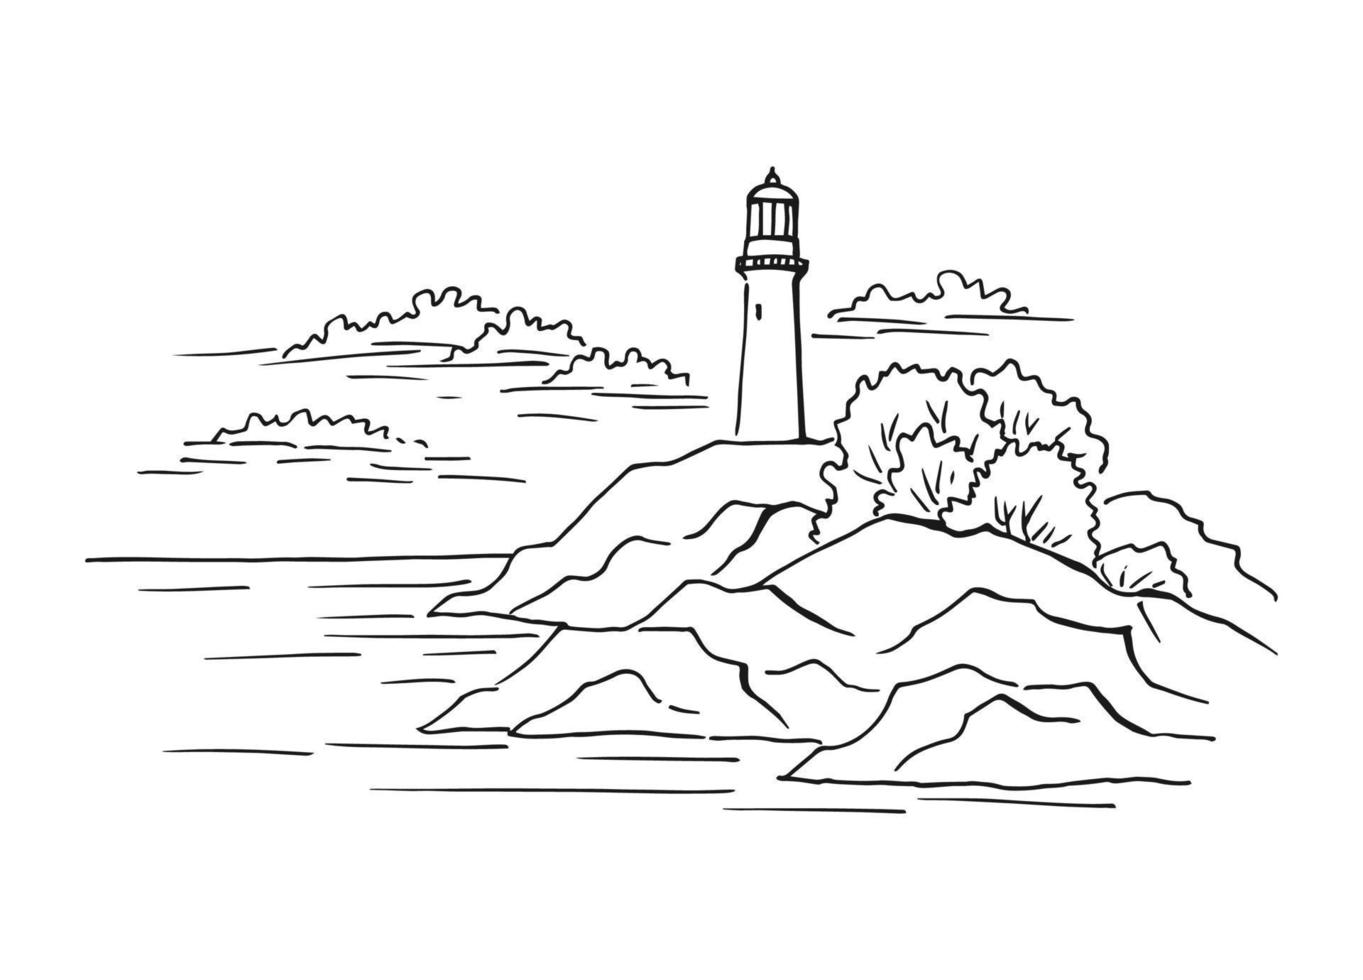 marina. faro. ilustración dibujada a mano convertida en vector. vector de ilustración de boceto de paisaje gráfico de la costa del mar.